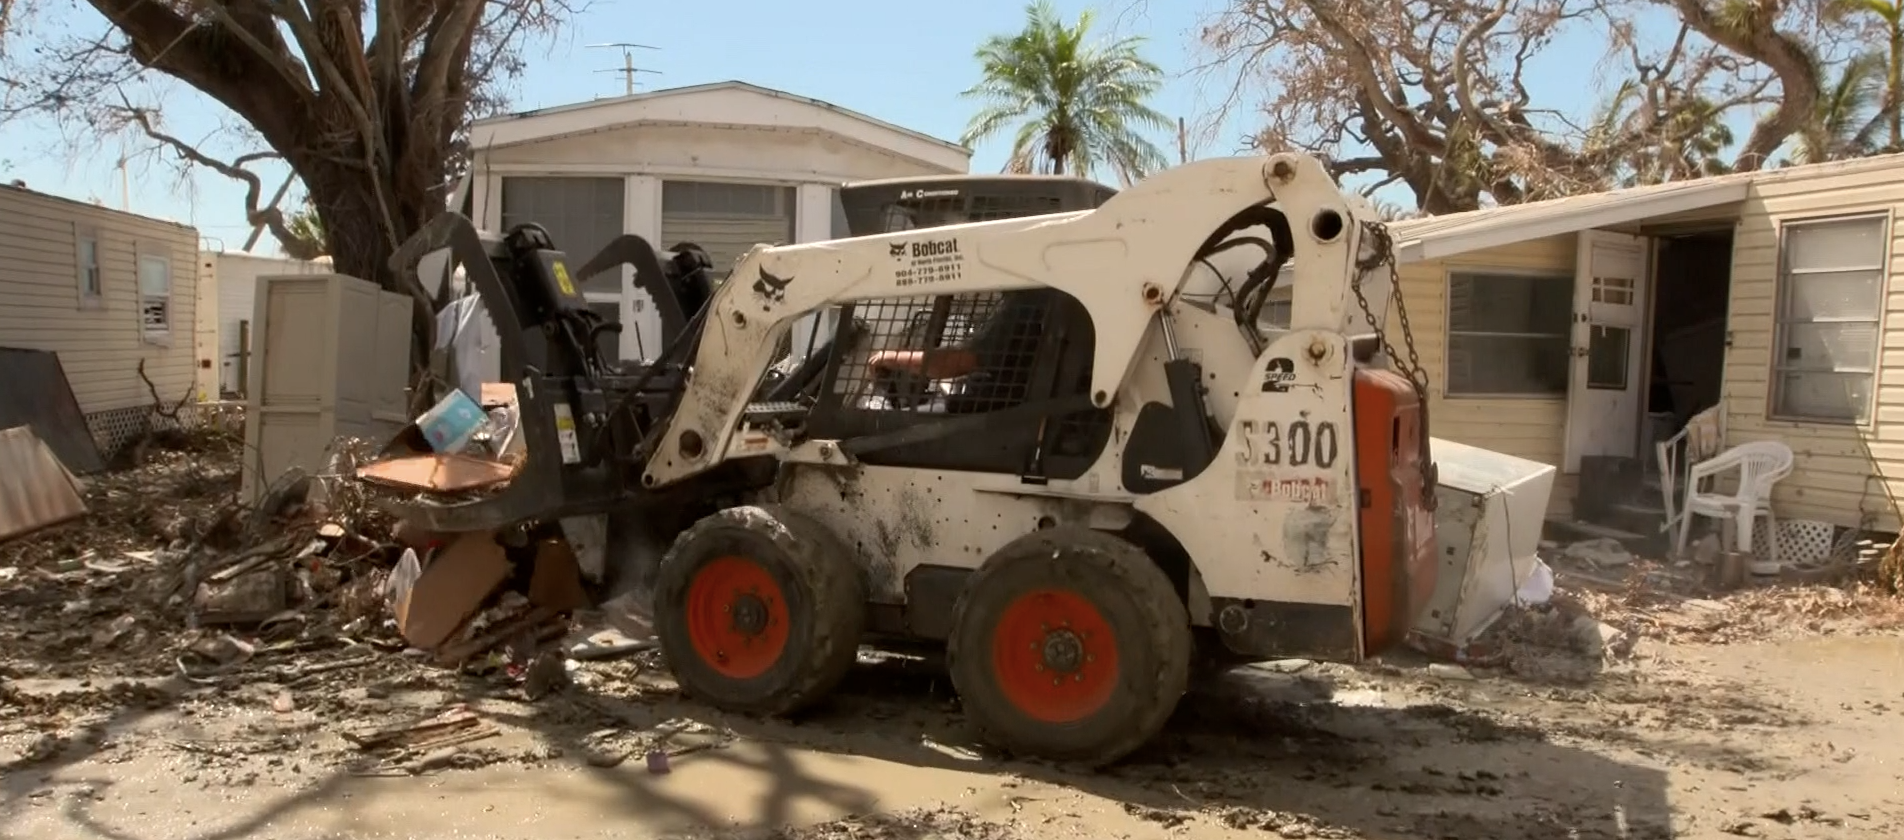 佛州灾区抢修进行中 重建家园之路仍漫长